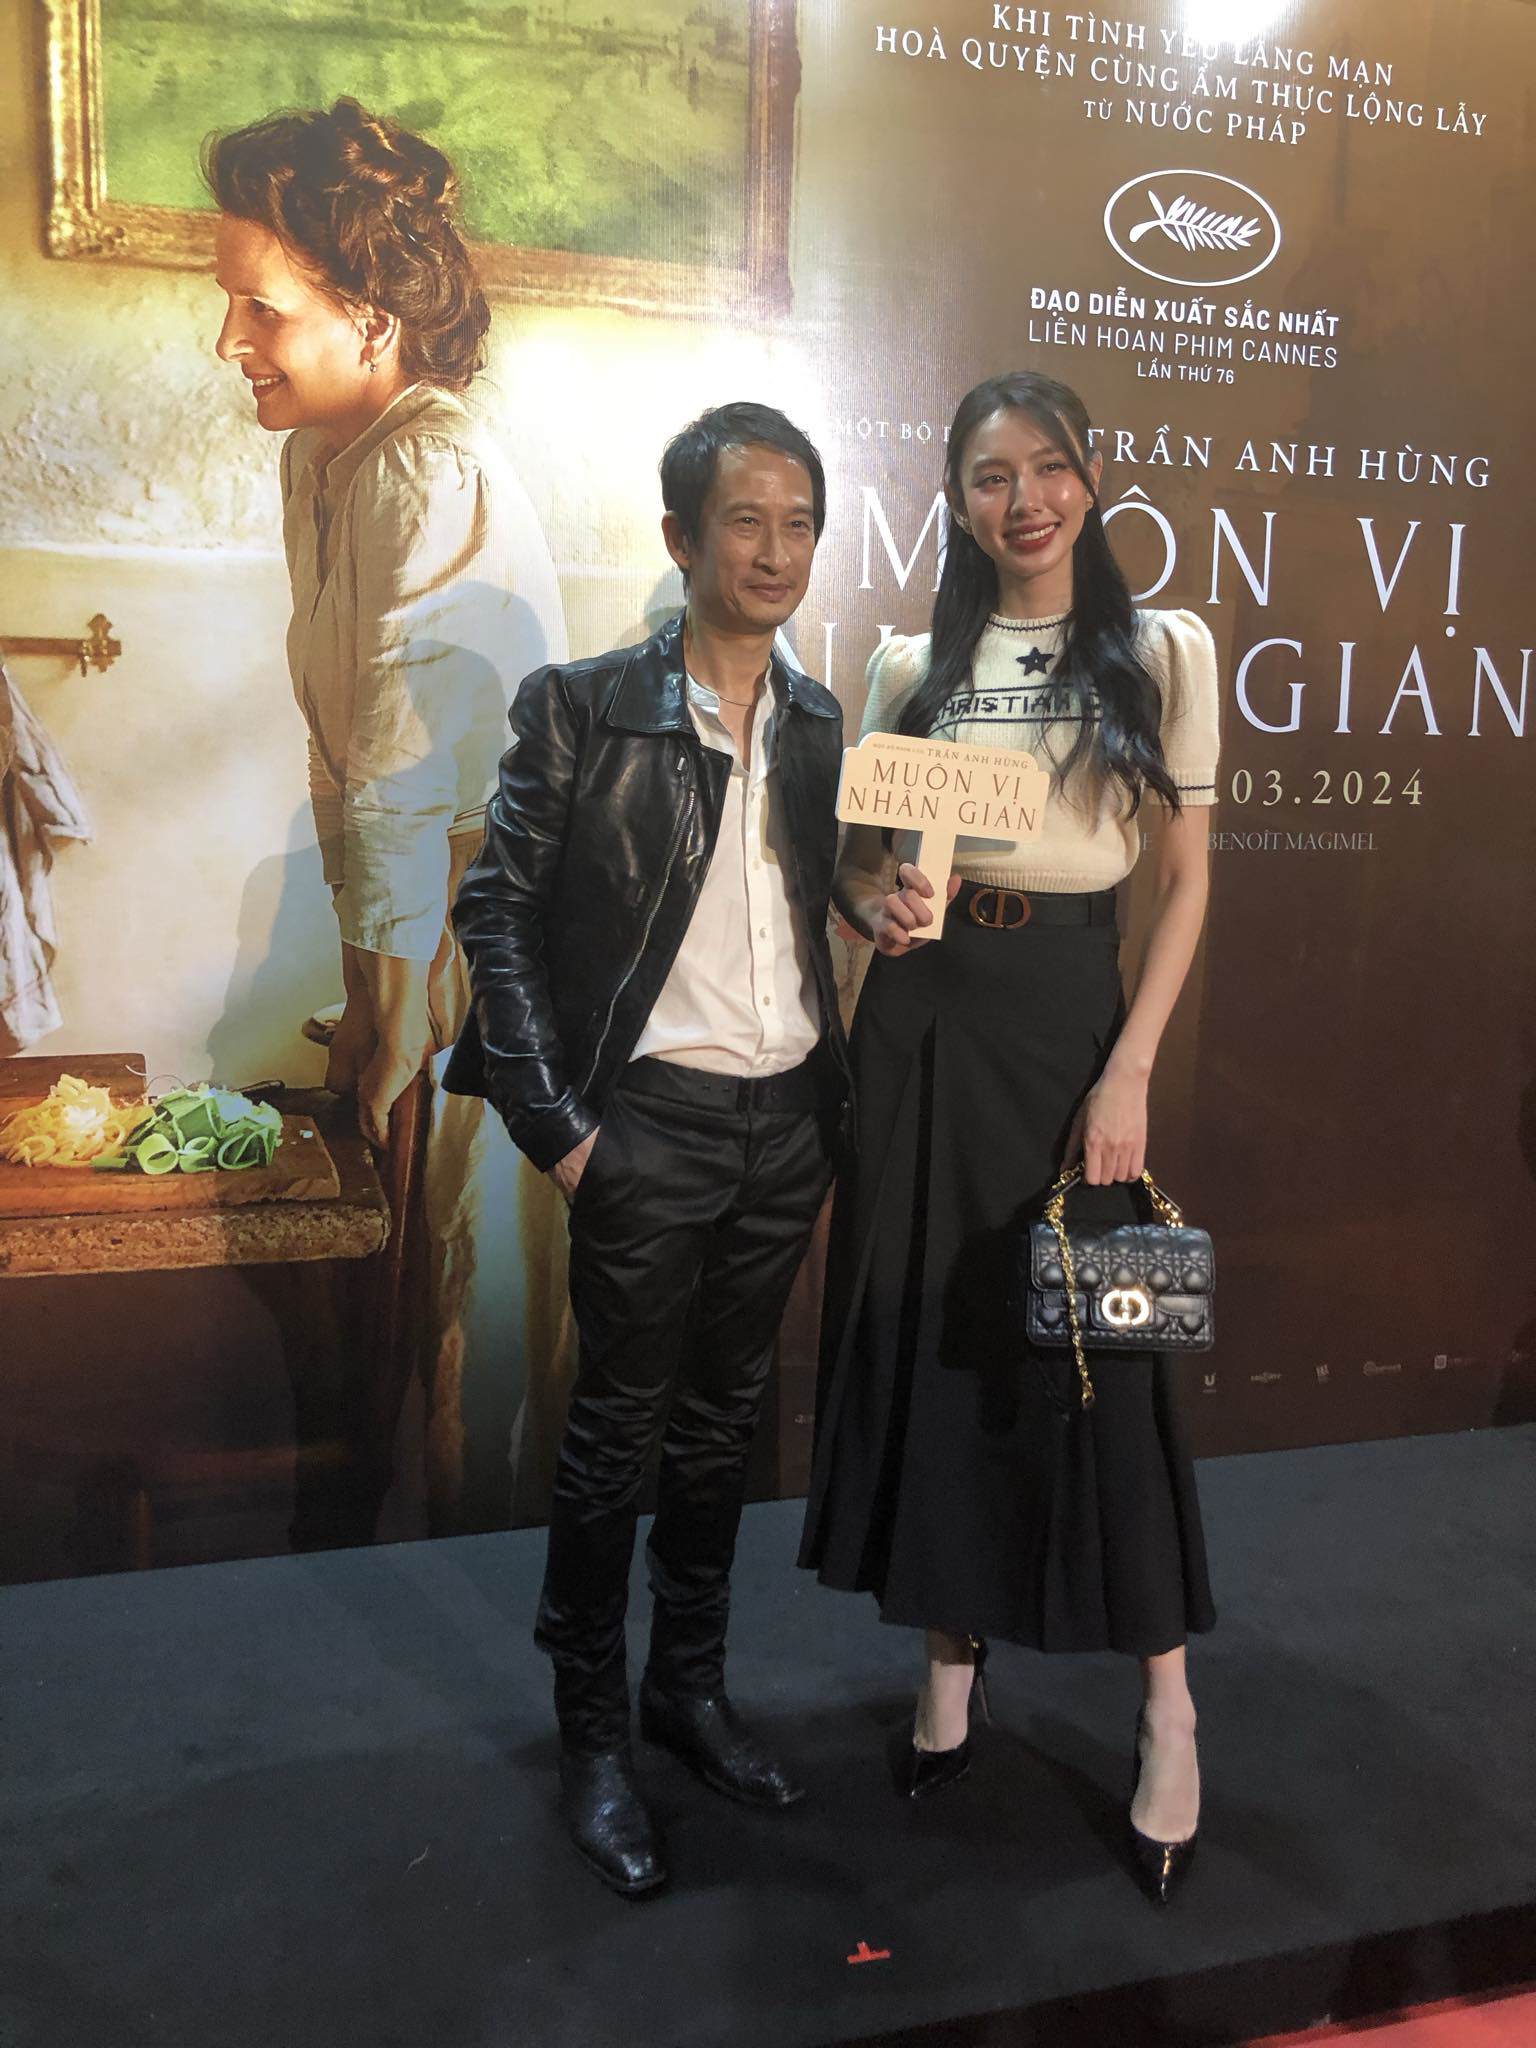 Đạo diễn Trần Anh Hùng: Tôi mừng khi điện ảnh Việt có nhiều phim trăm tỷ - 3